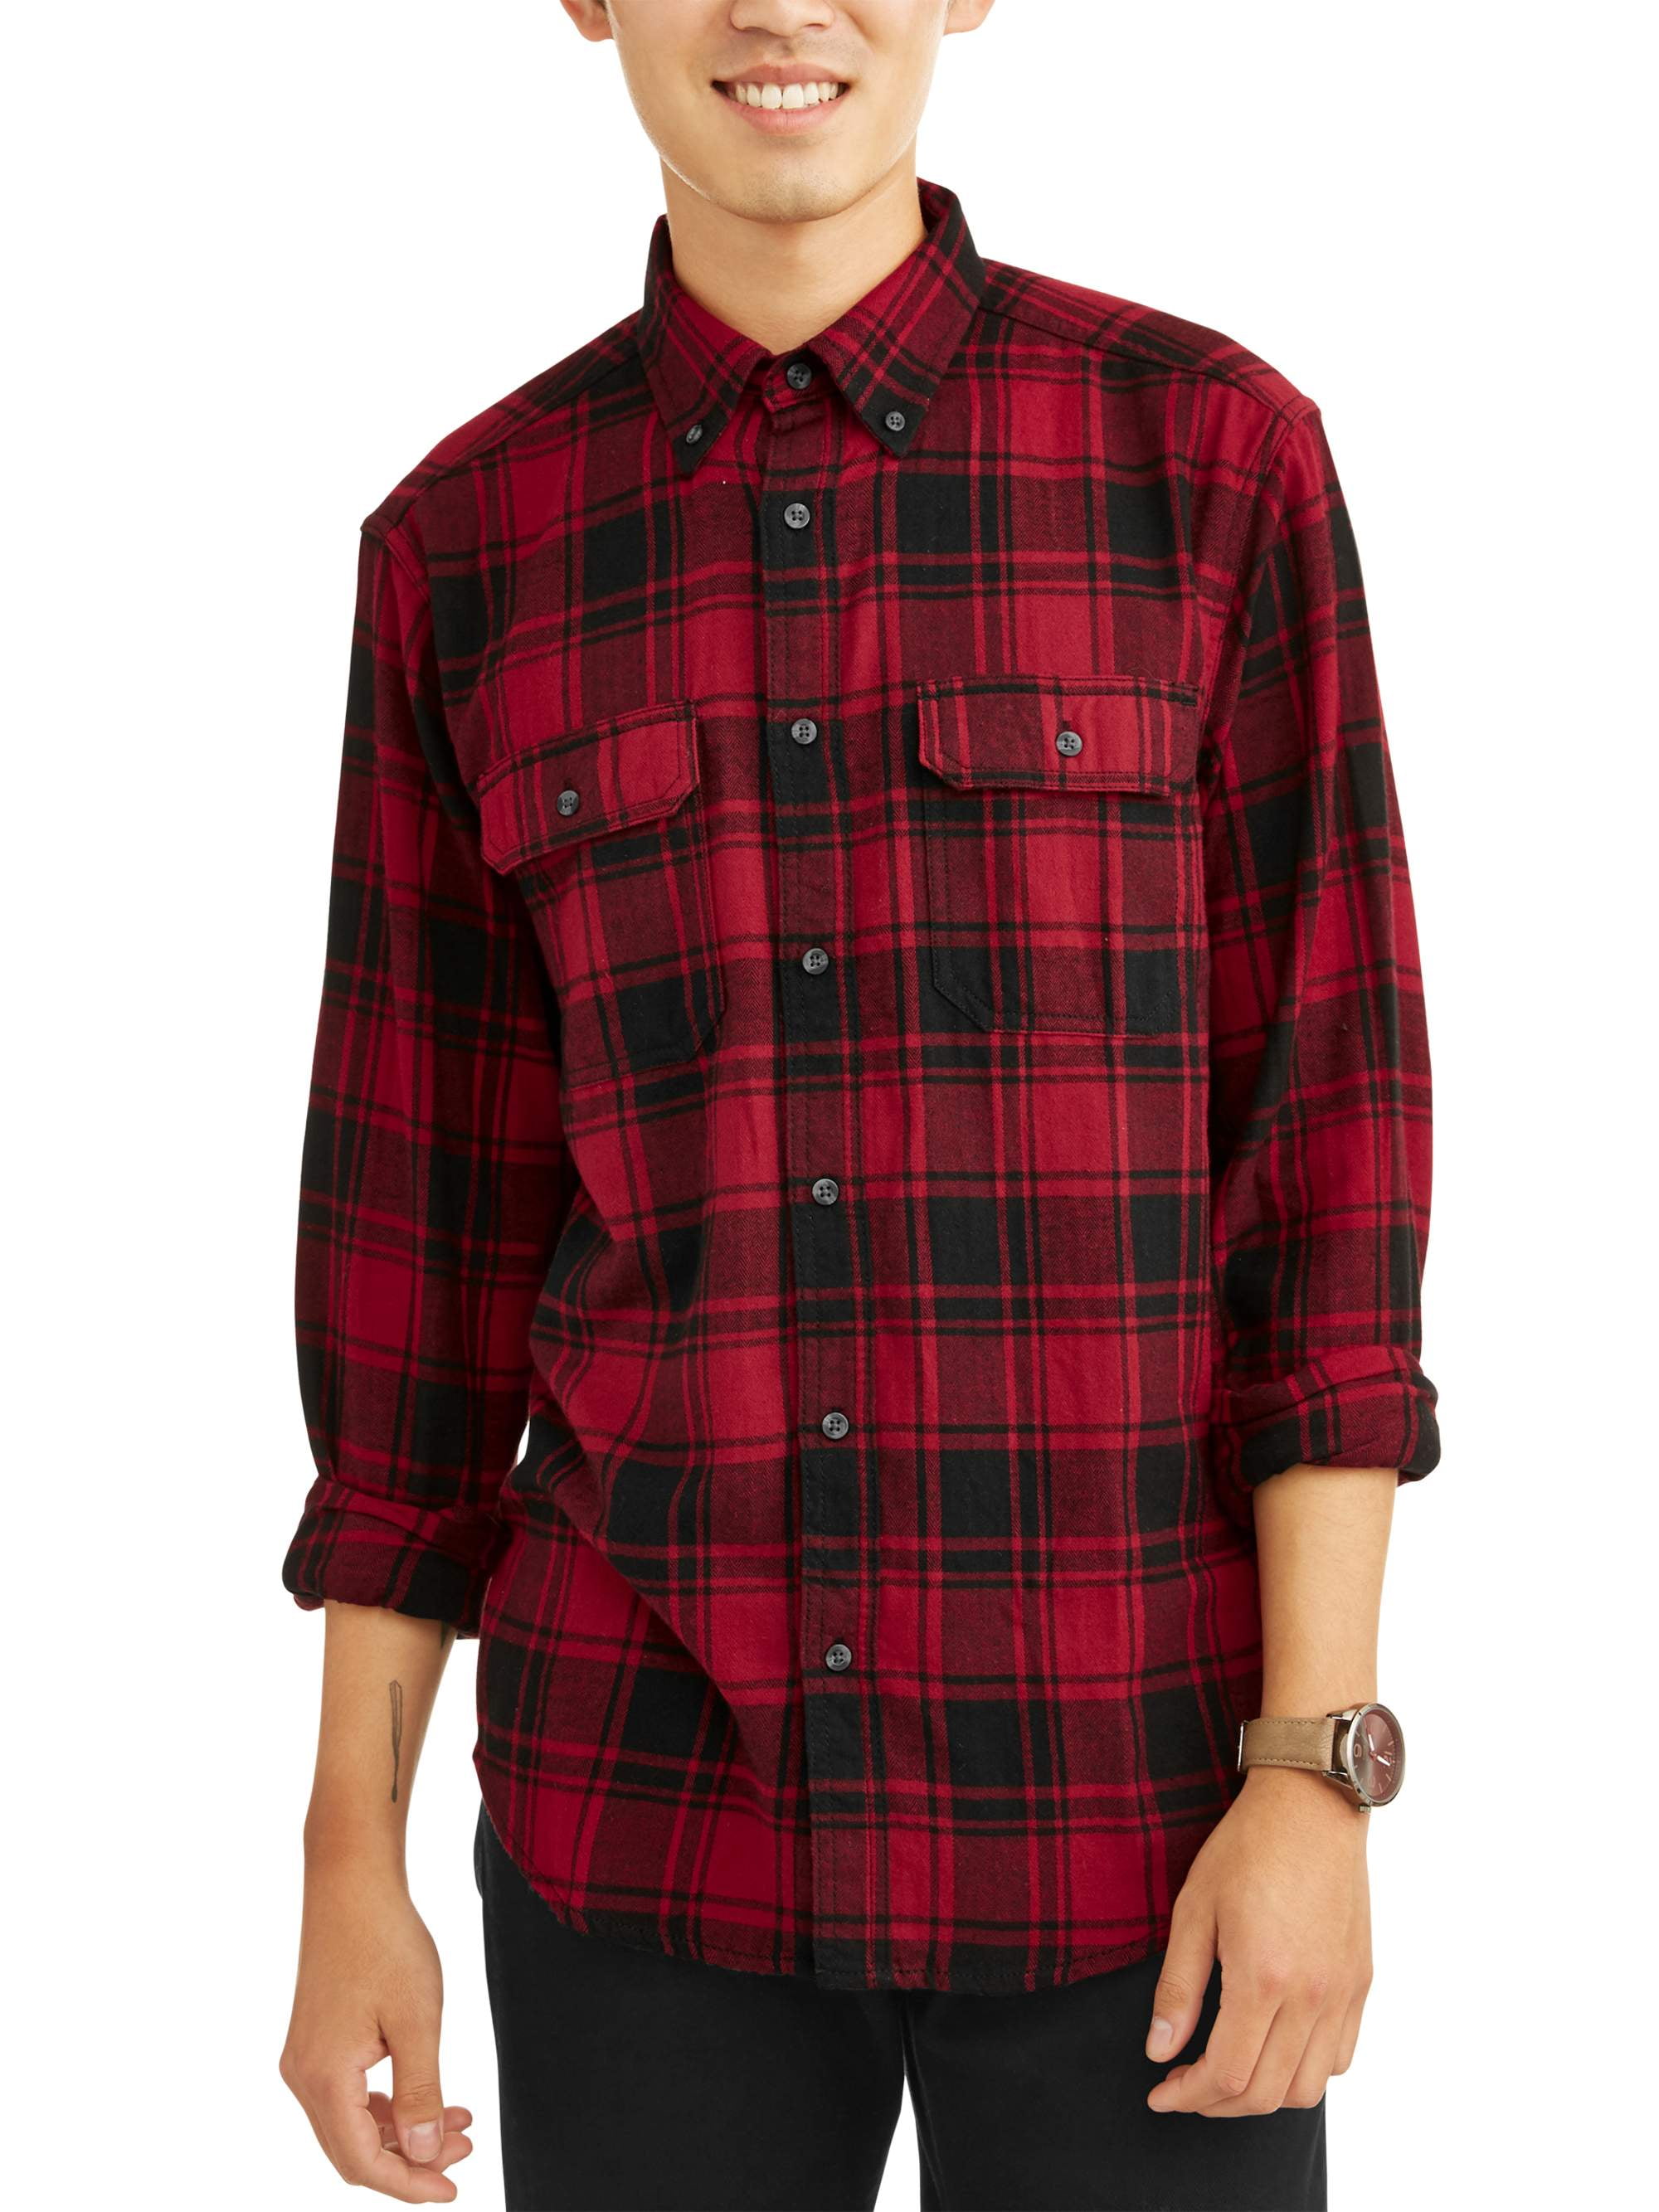 Men's & Tall Long Sleeve Flannel Shirt, to Size 3Xlt - Walmart.com